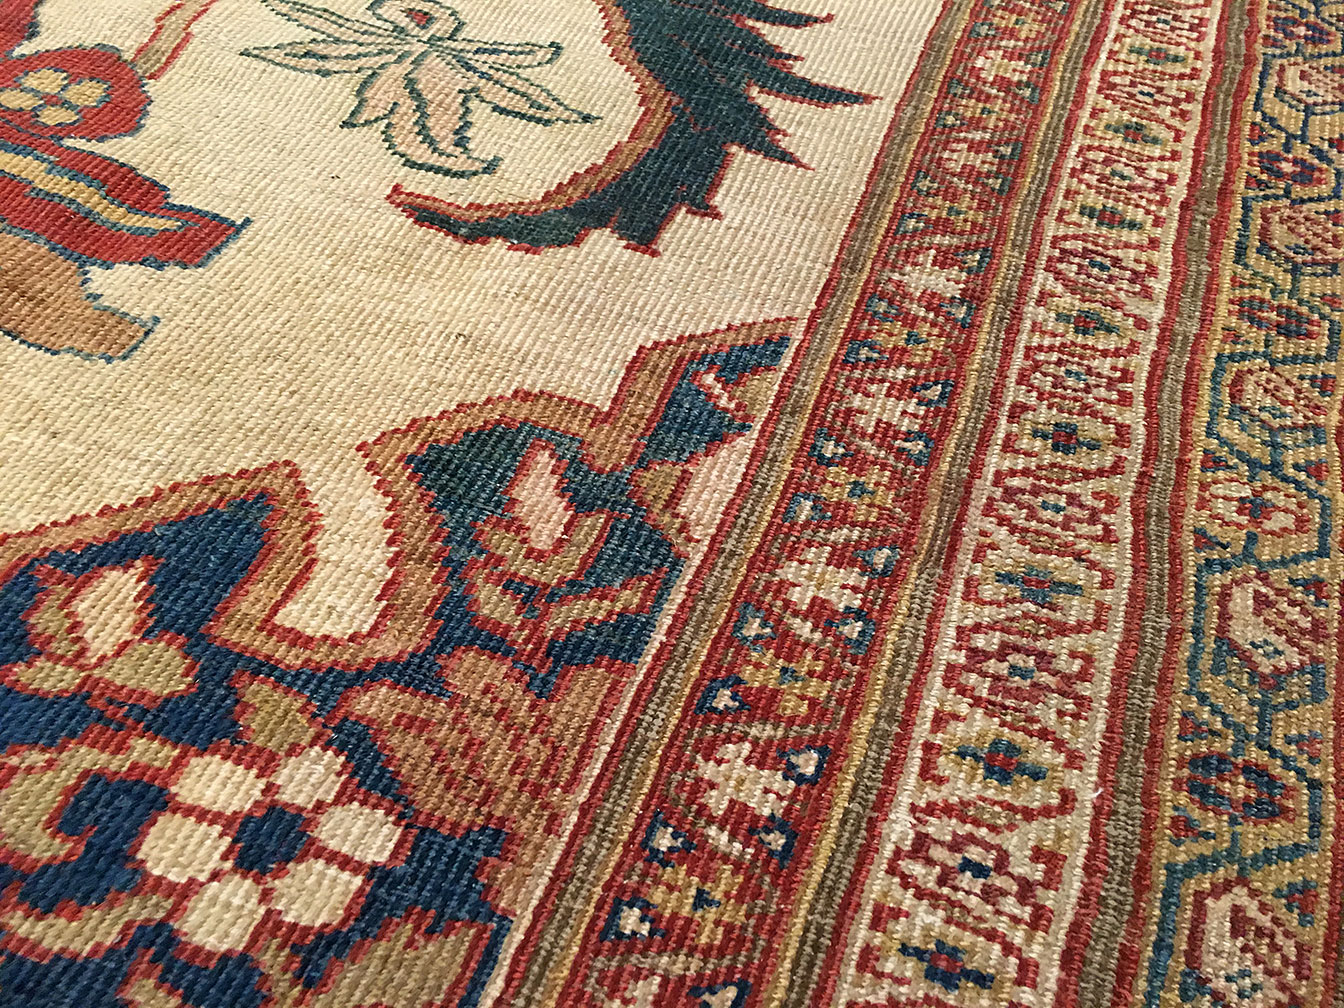 Antique sultan abad Carpet - # 51392